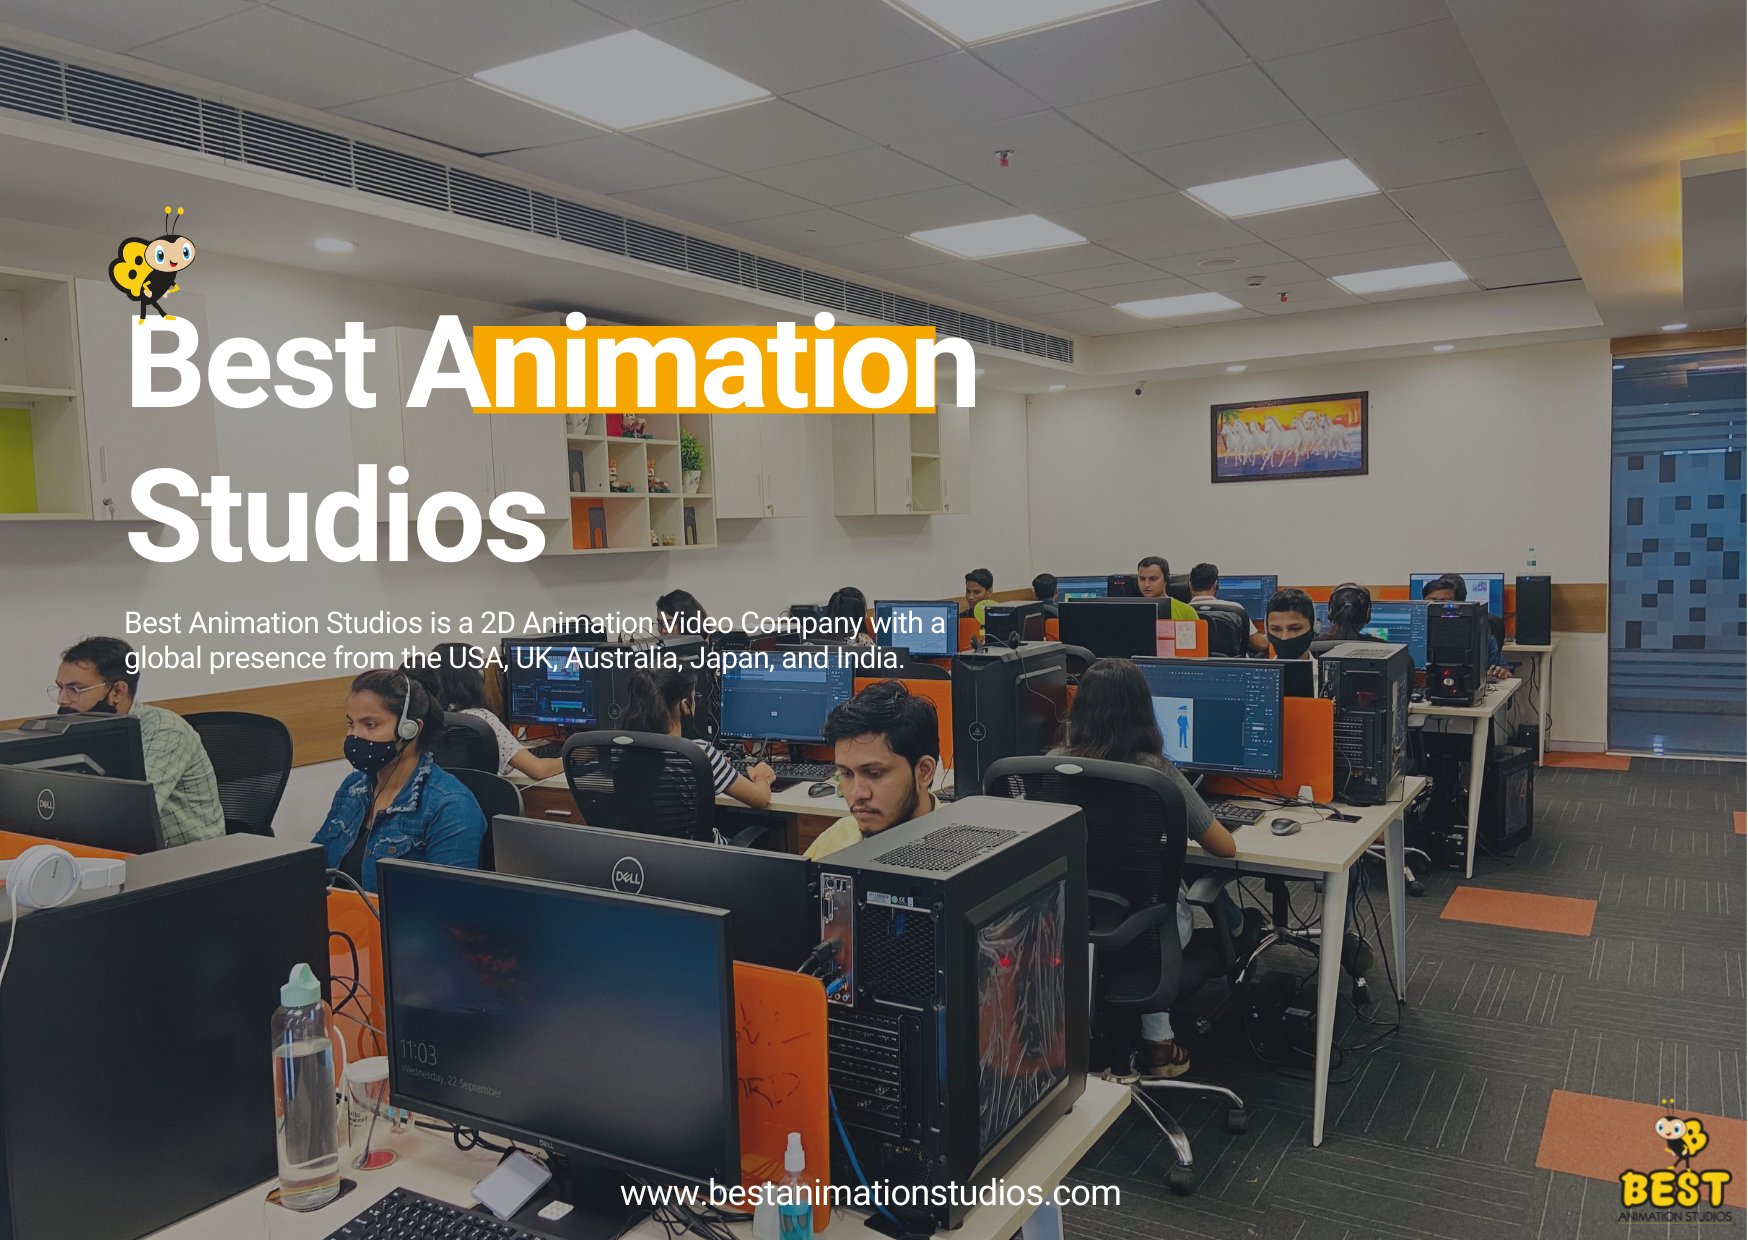 Best Animation Studios on Twitter: 